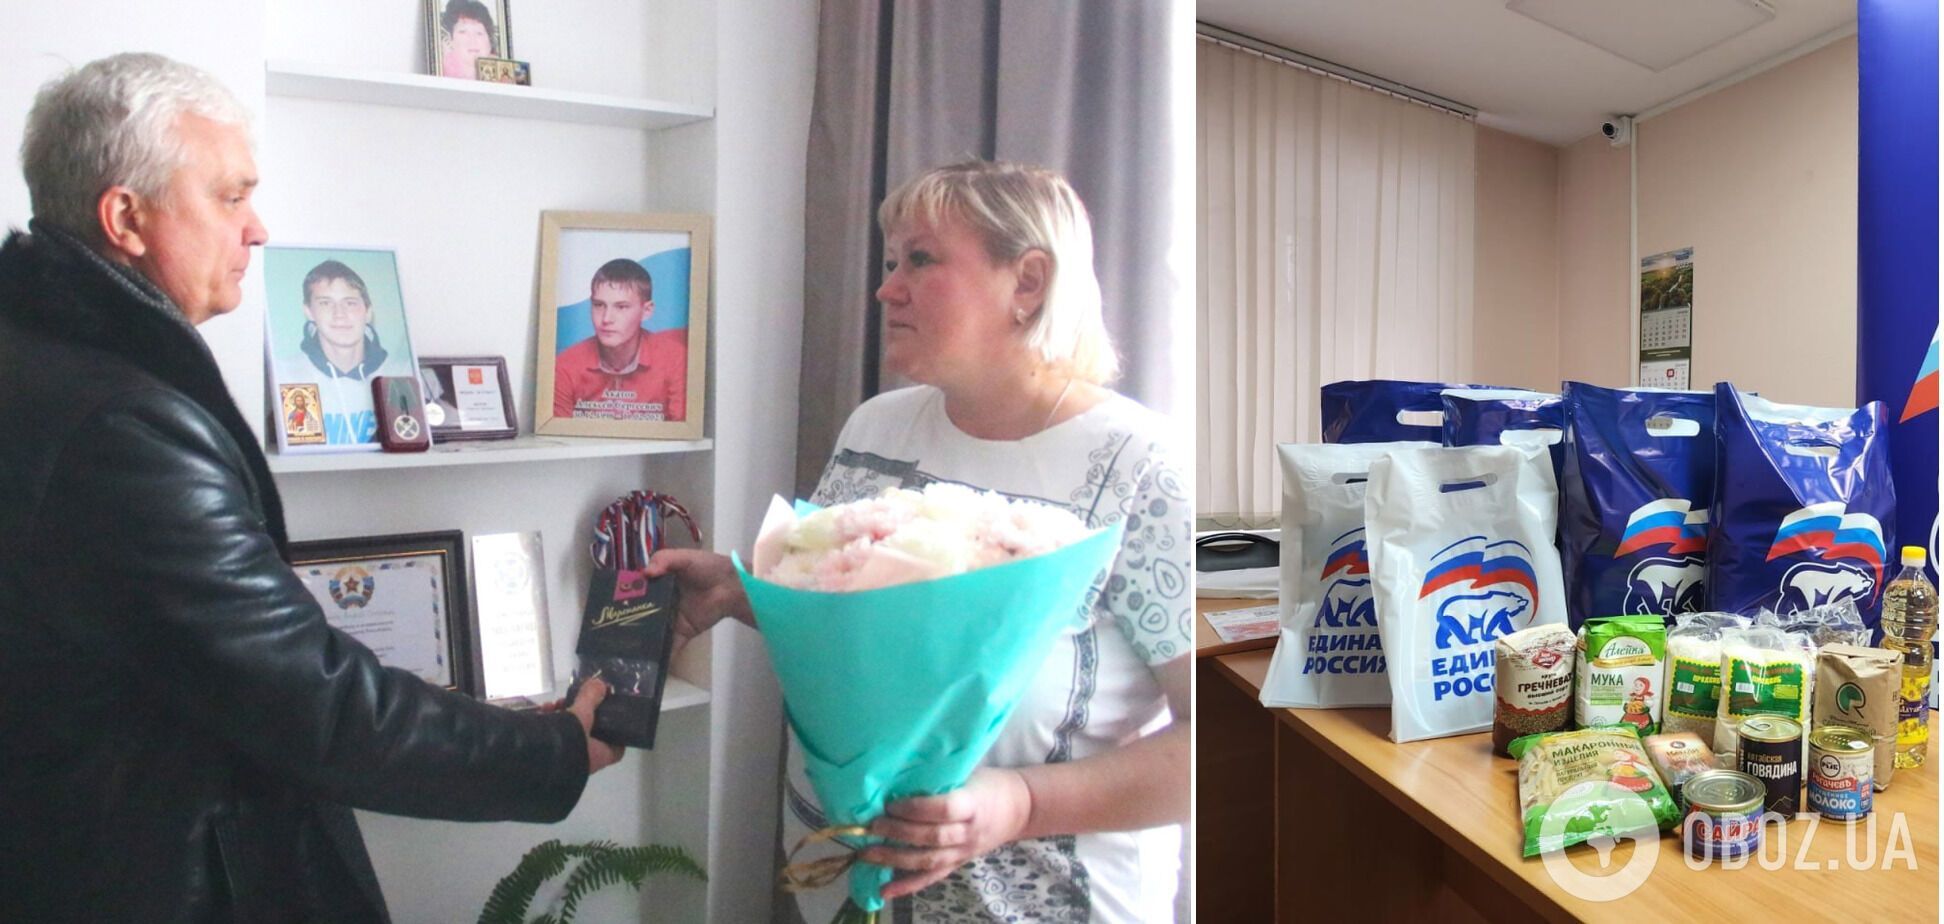 "Этапы деградации СВОлочизма": в России мать убитого оккупанта наградили коробкой конфет